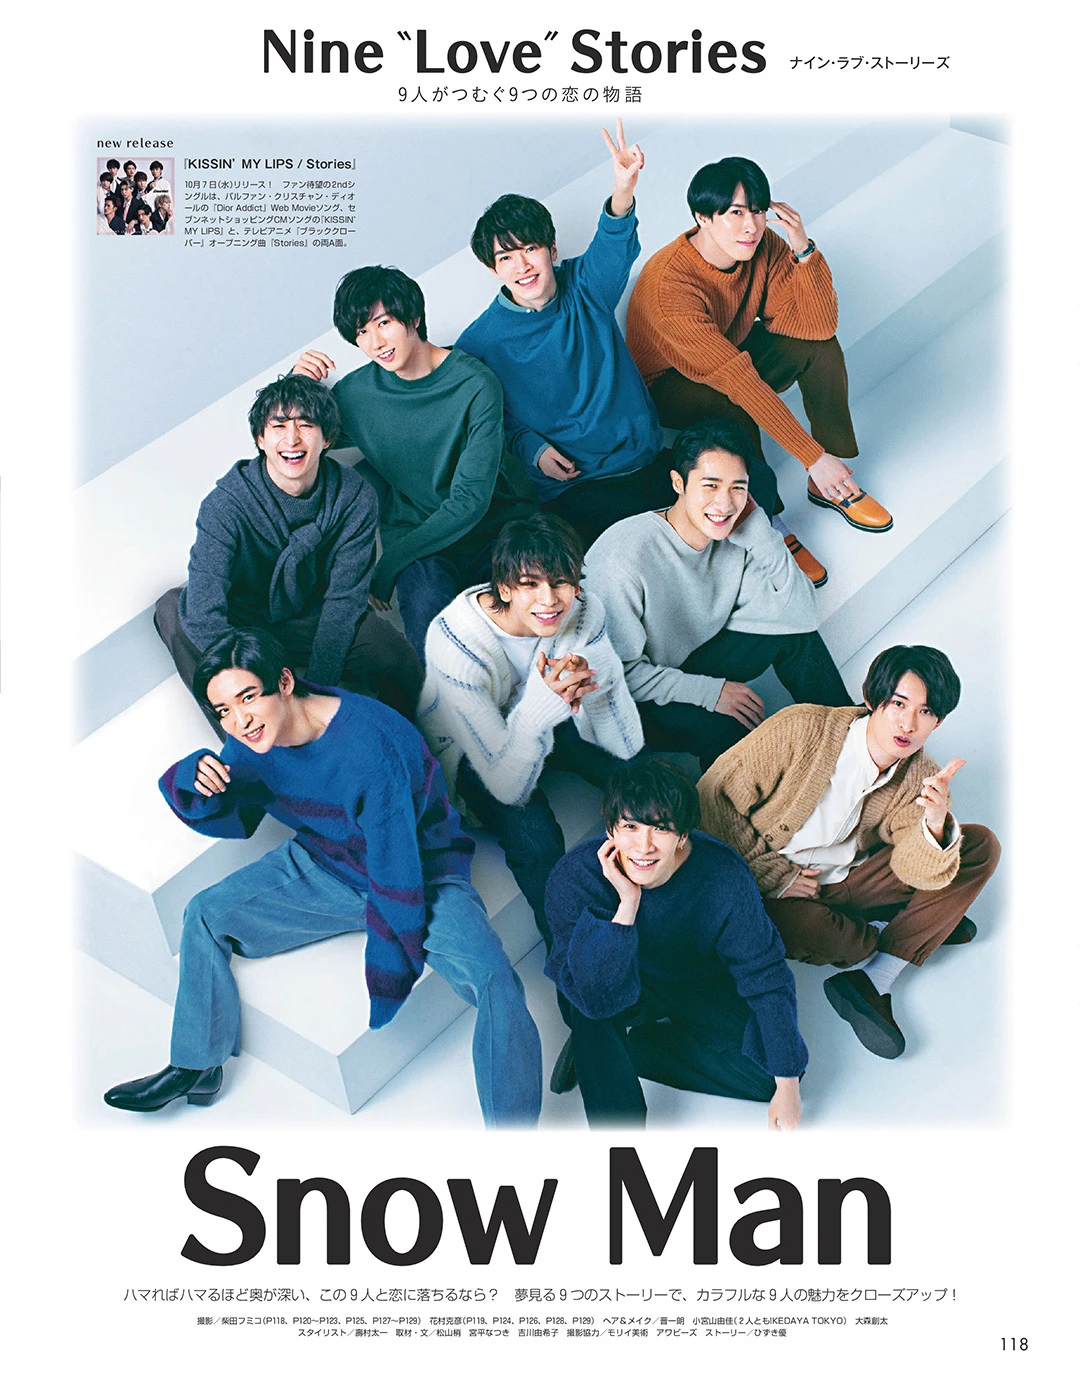 Snow Man「９人がつむぐ９つの恋の物語」